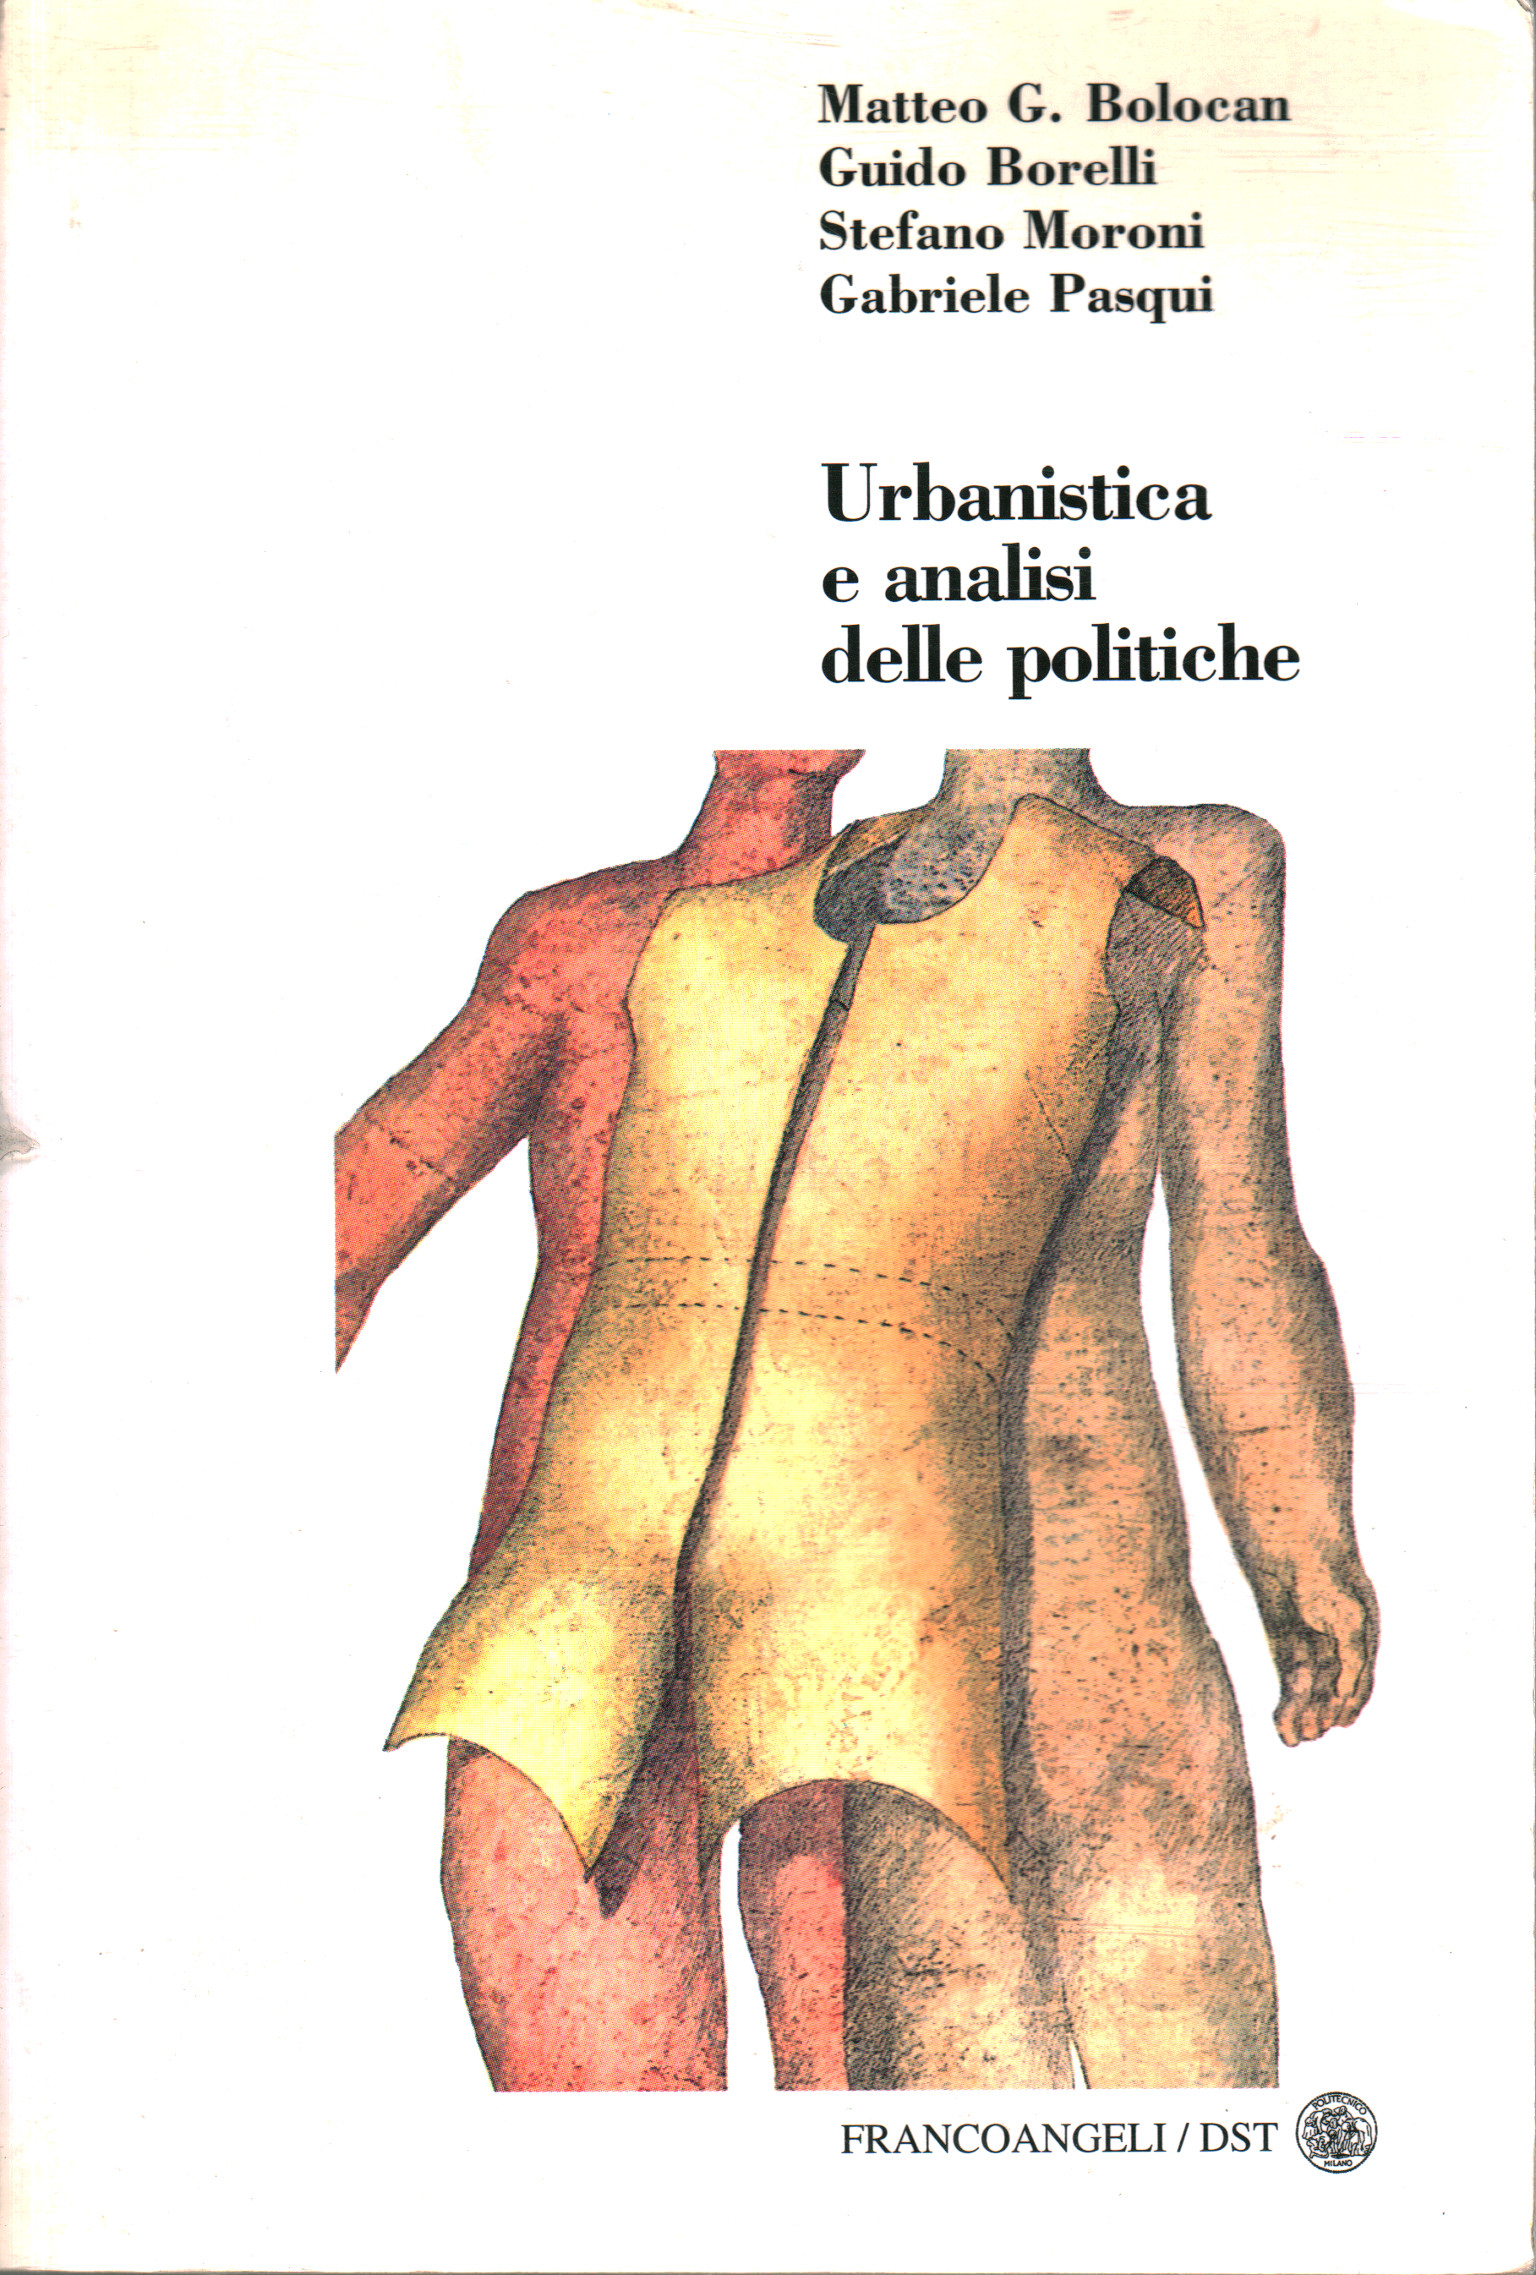 Urbanistica e analisi delle politiche, Matteo G. Bolocan Guido Borelli Stefano Moroni Gabriele Pasqui